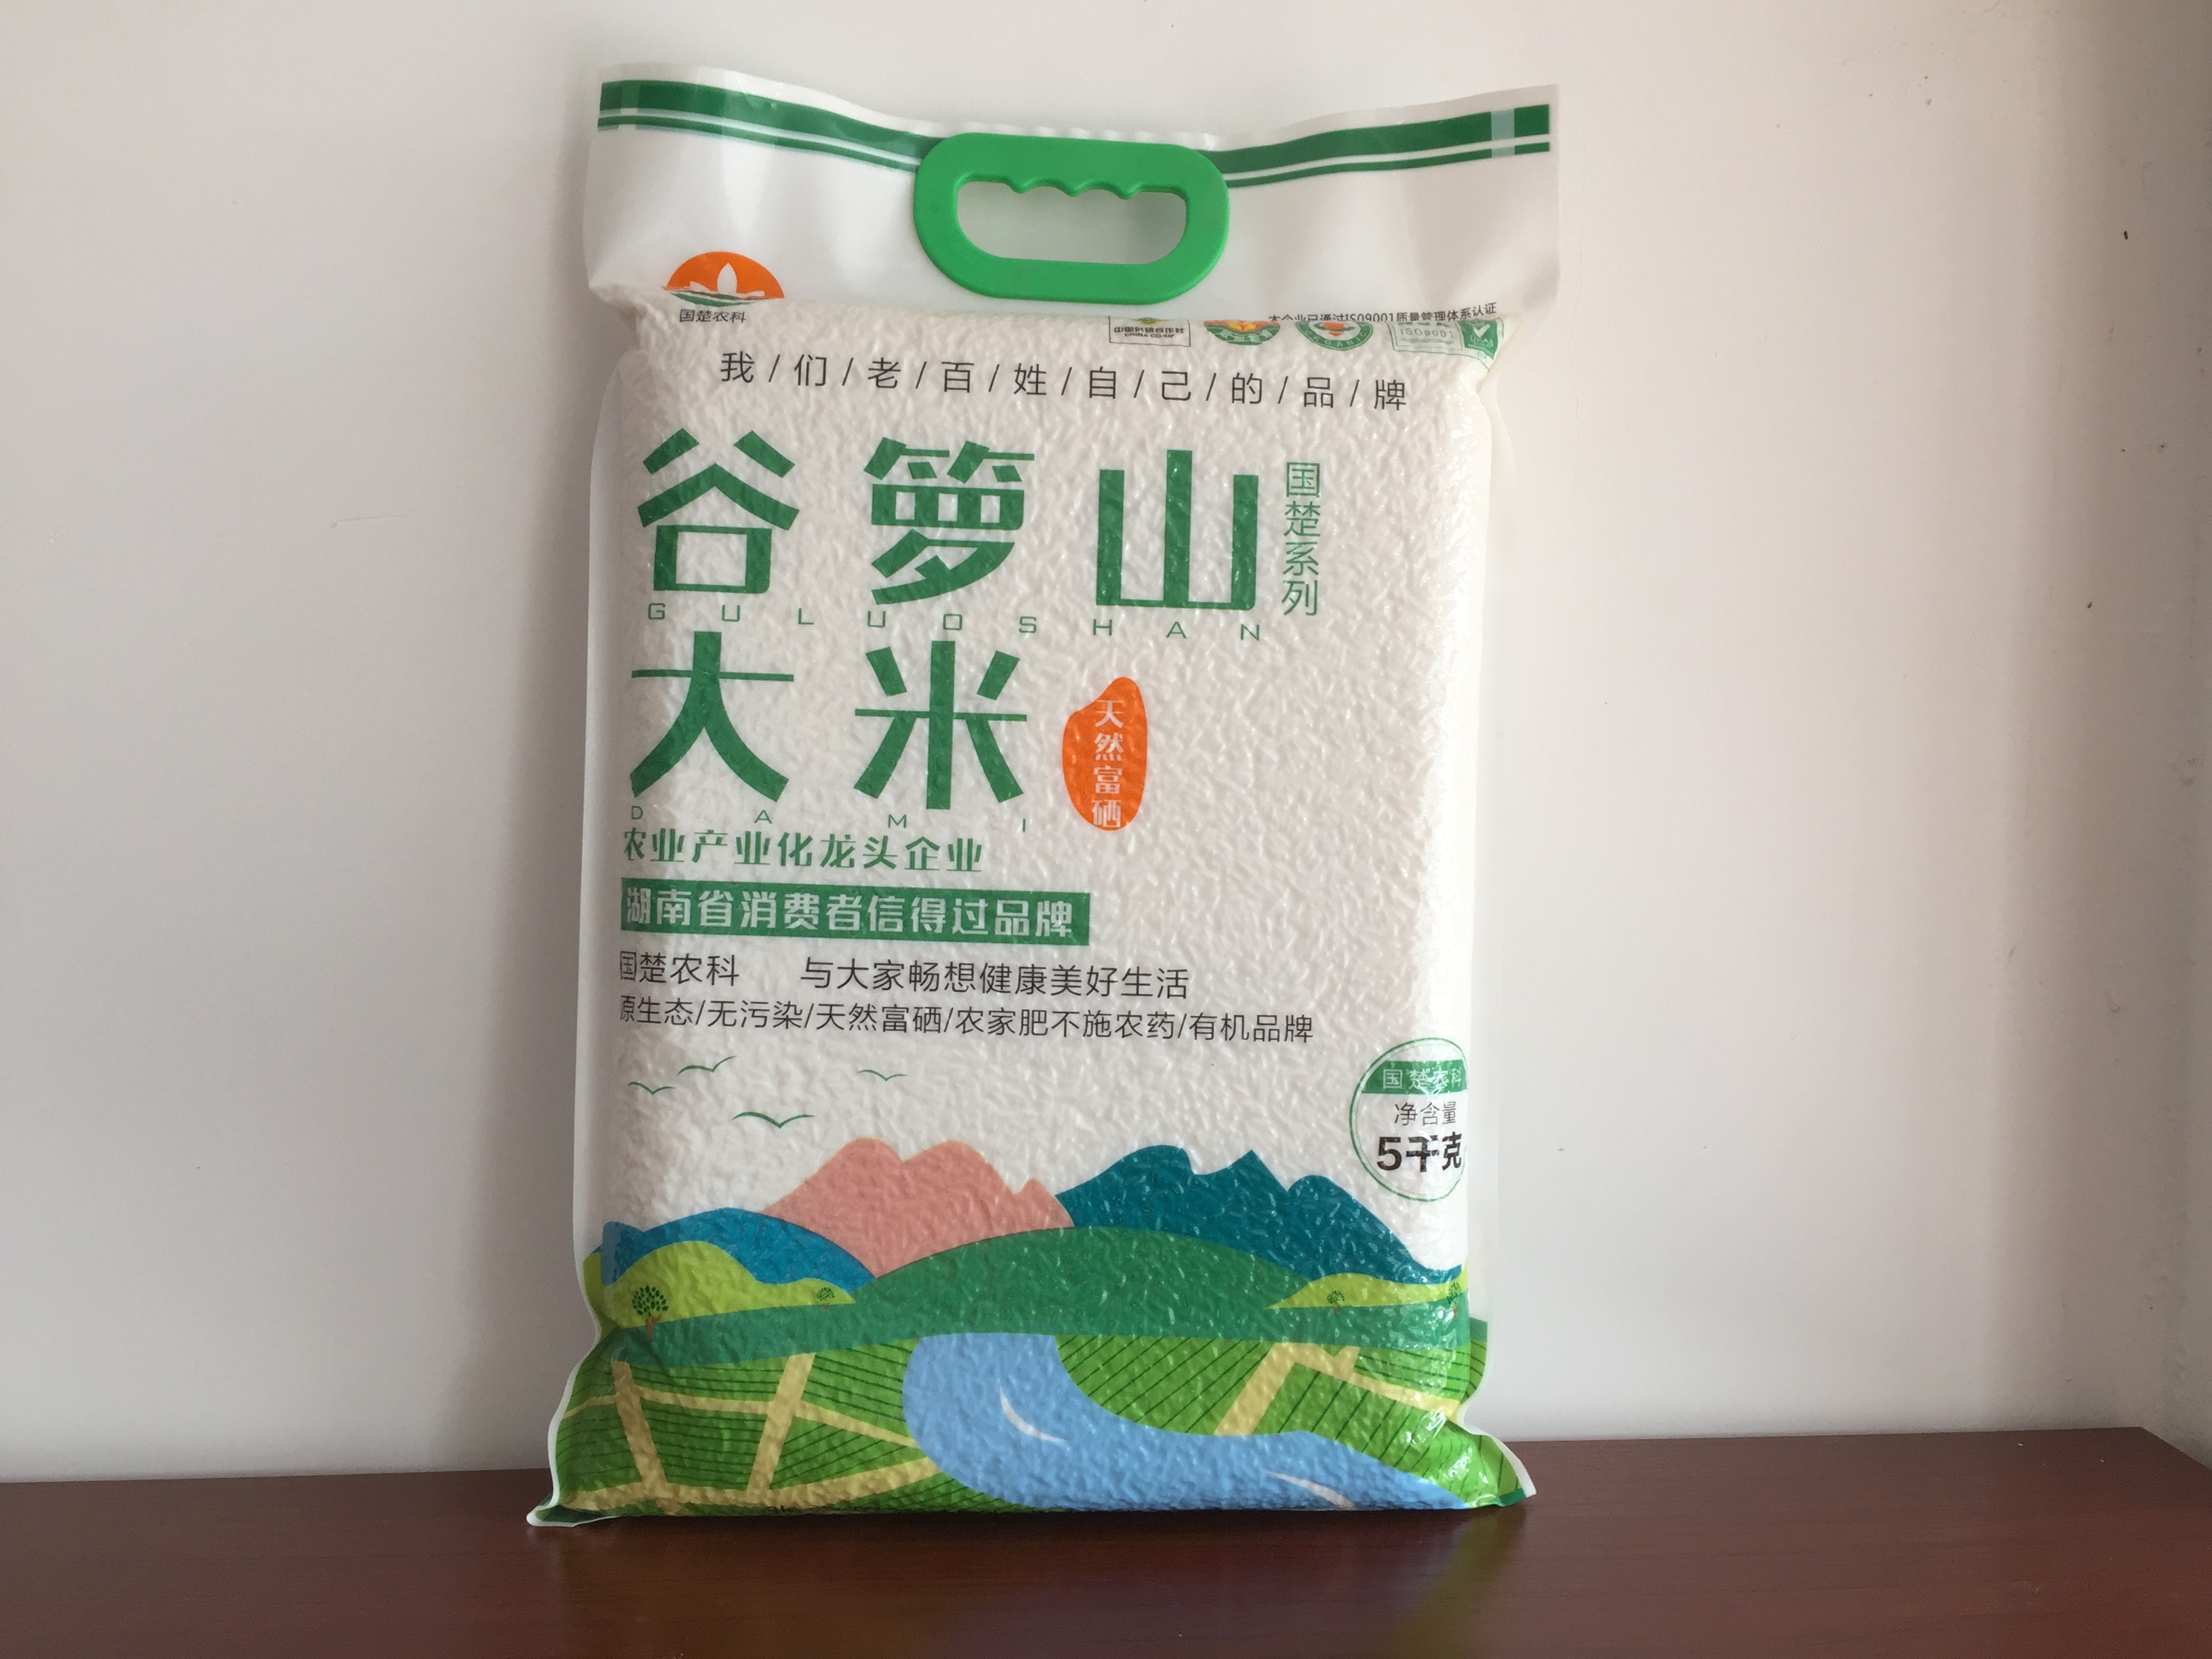 蛙鳅虾稻有机大米